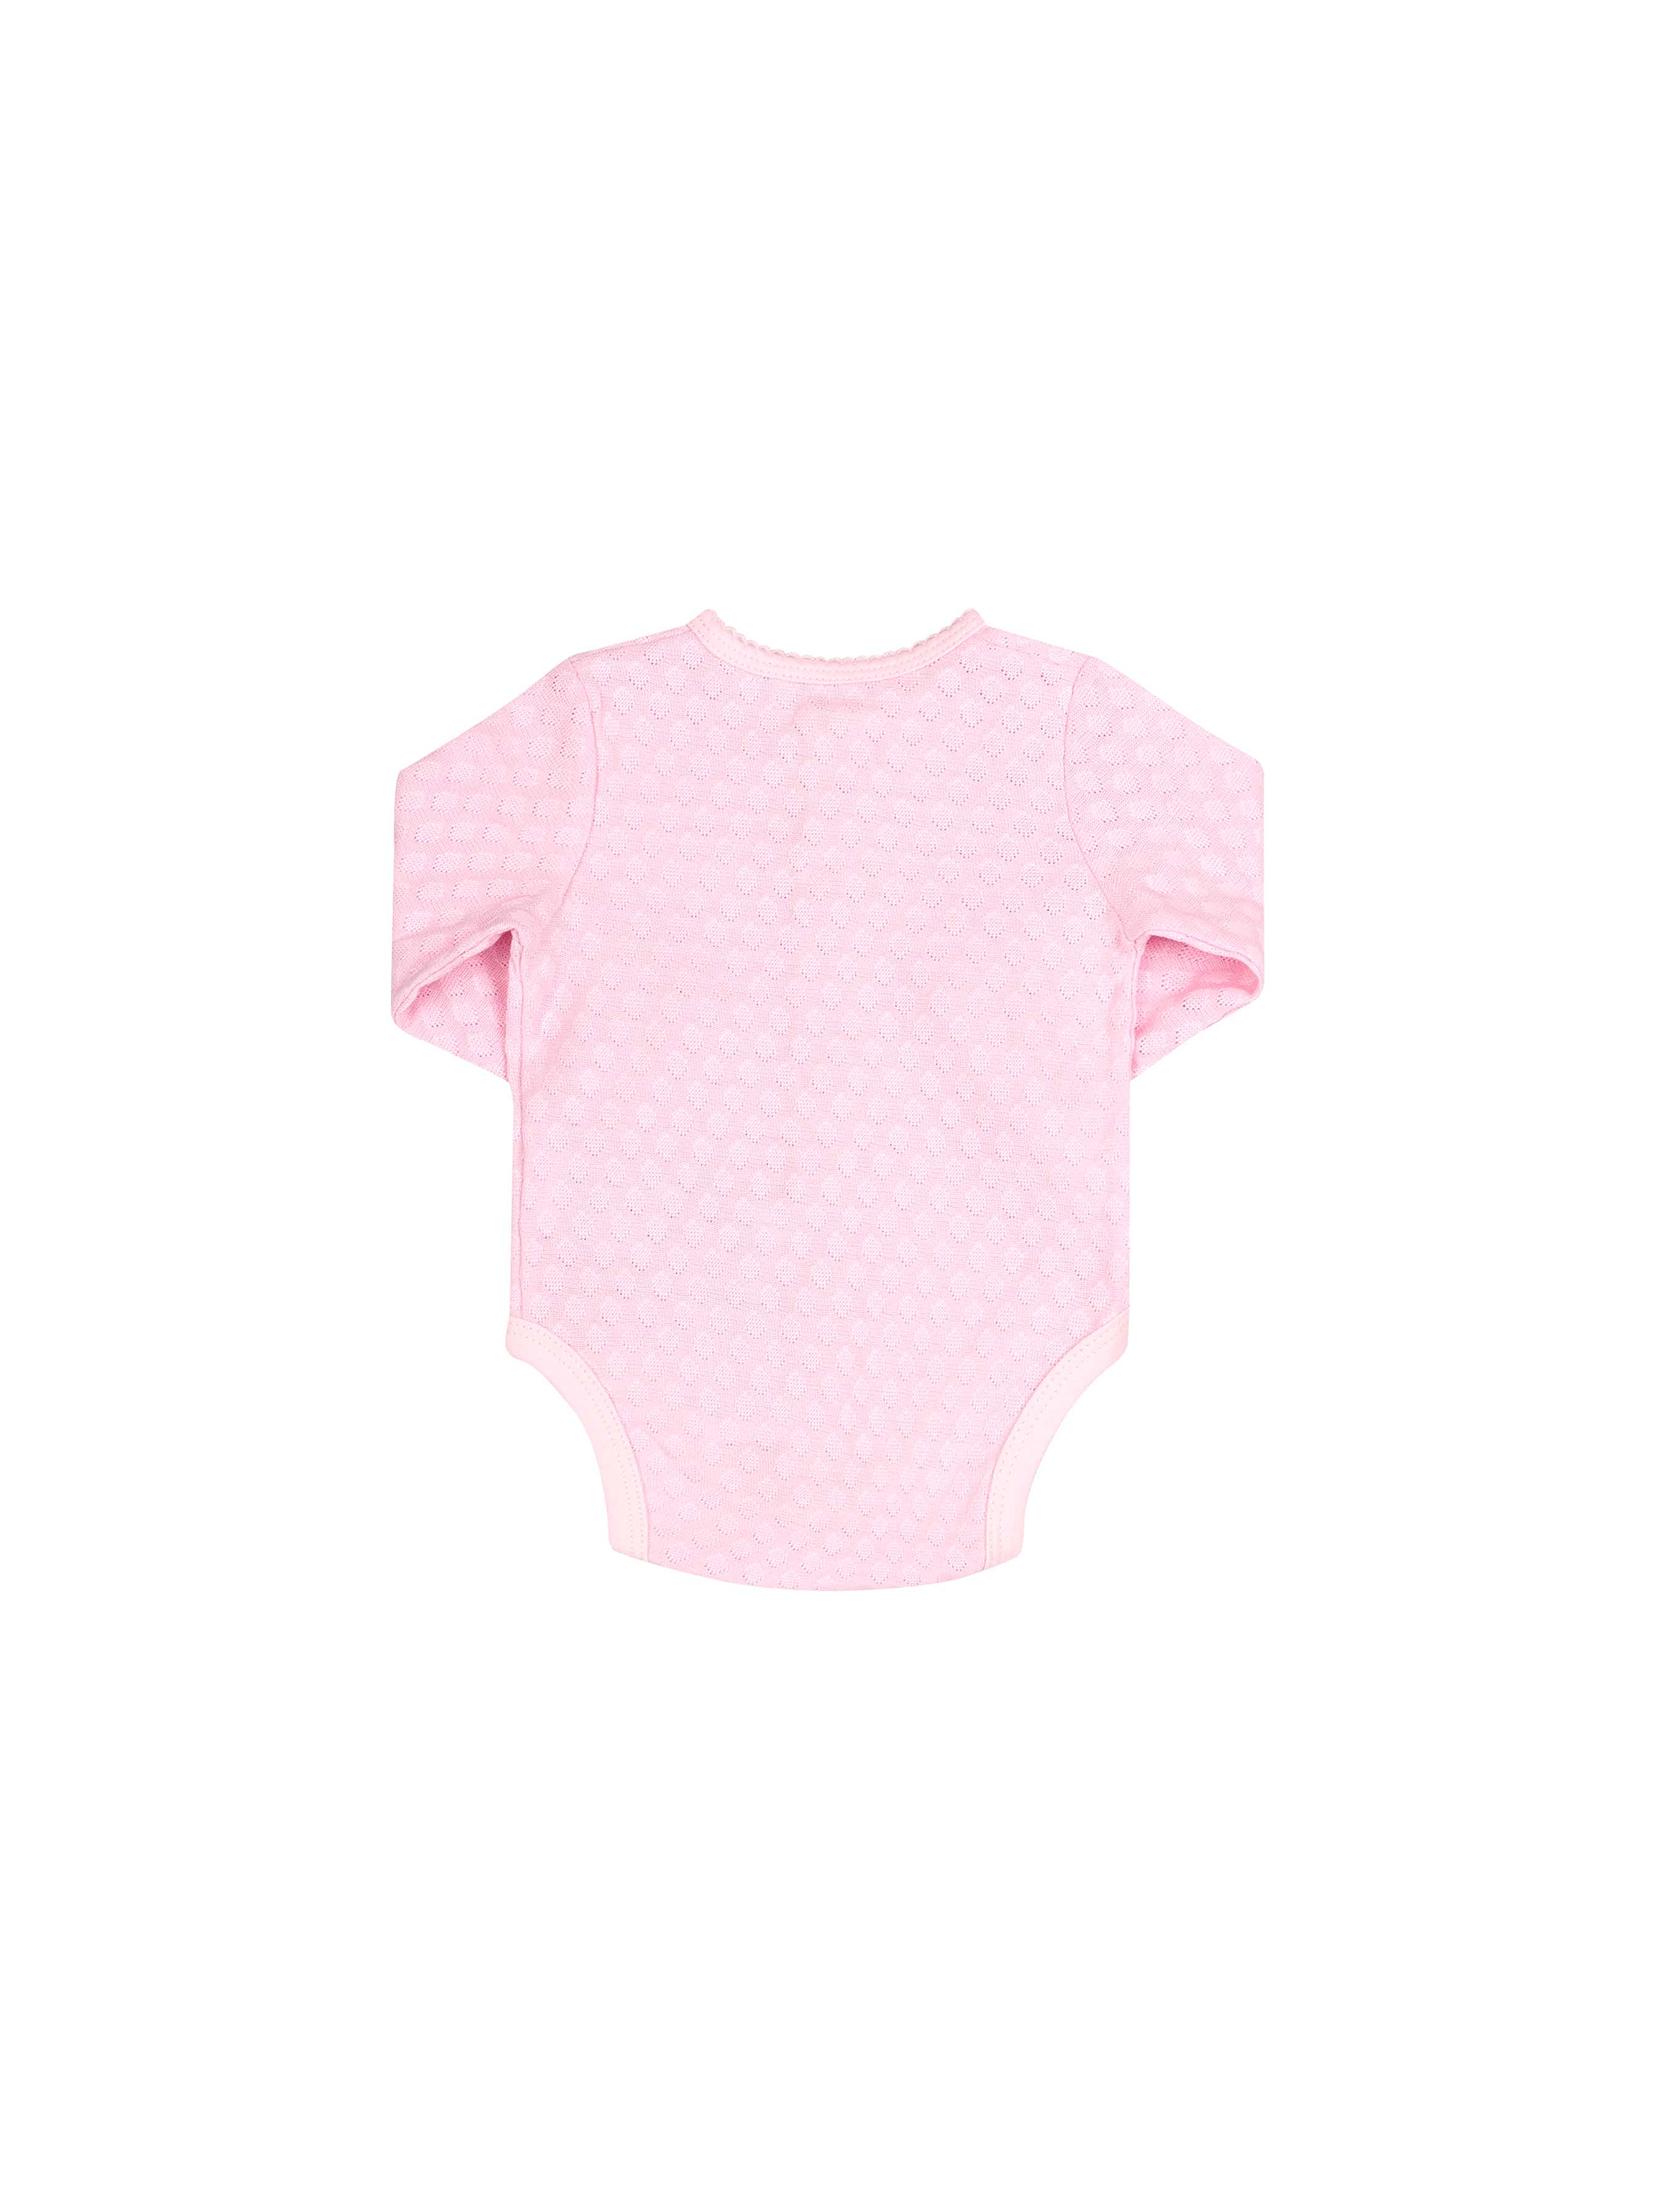 Bawełniane body niemowlęce różowe